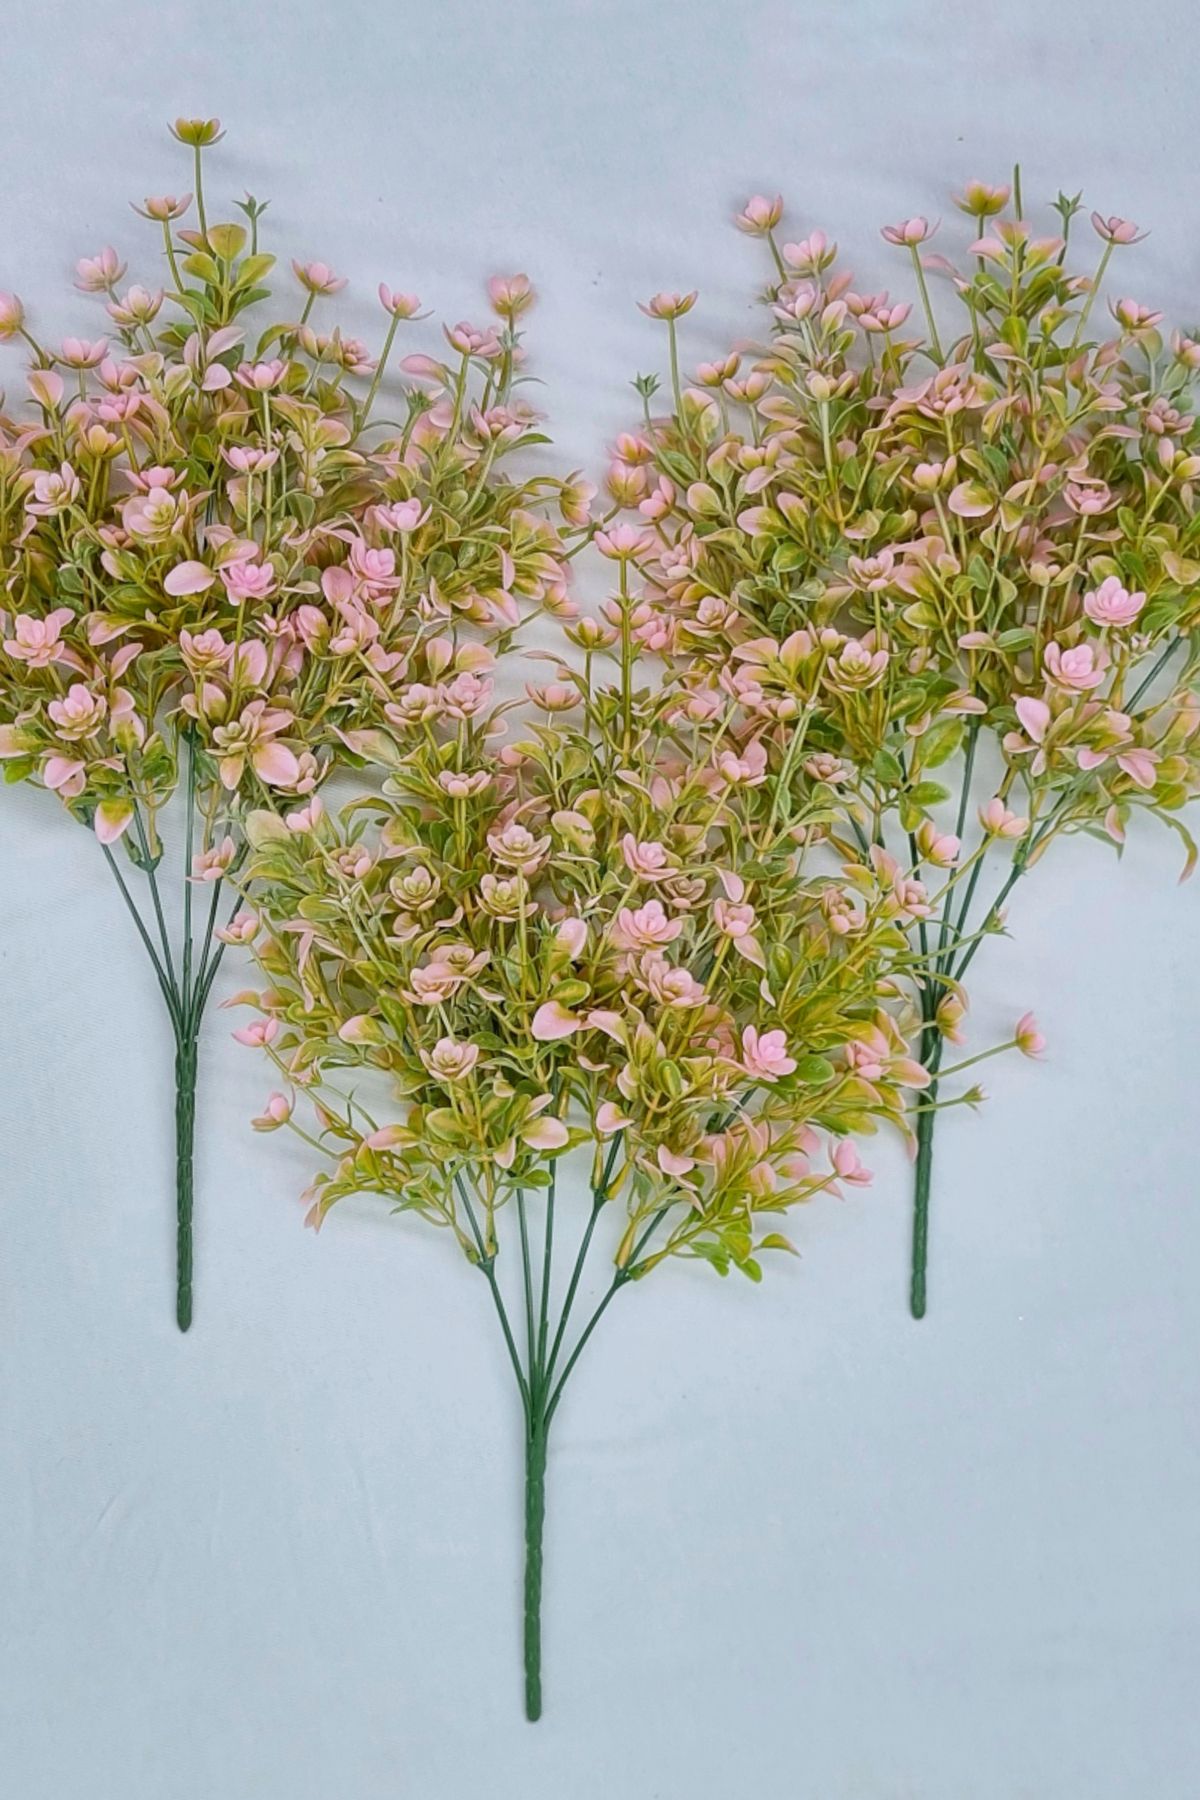 MD Aspiz Flowers Yapay Kaliteli Şimşir Demeti Garnitür Yeşil Aradal Dekoratif Fern Gül Çiçeği Buketi Saksısız